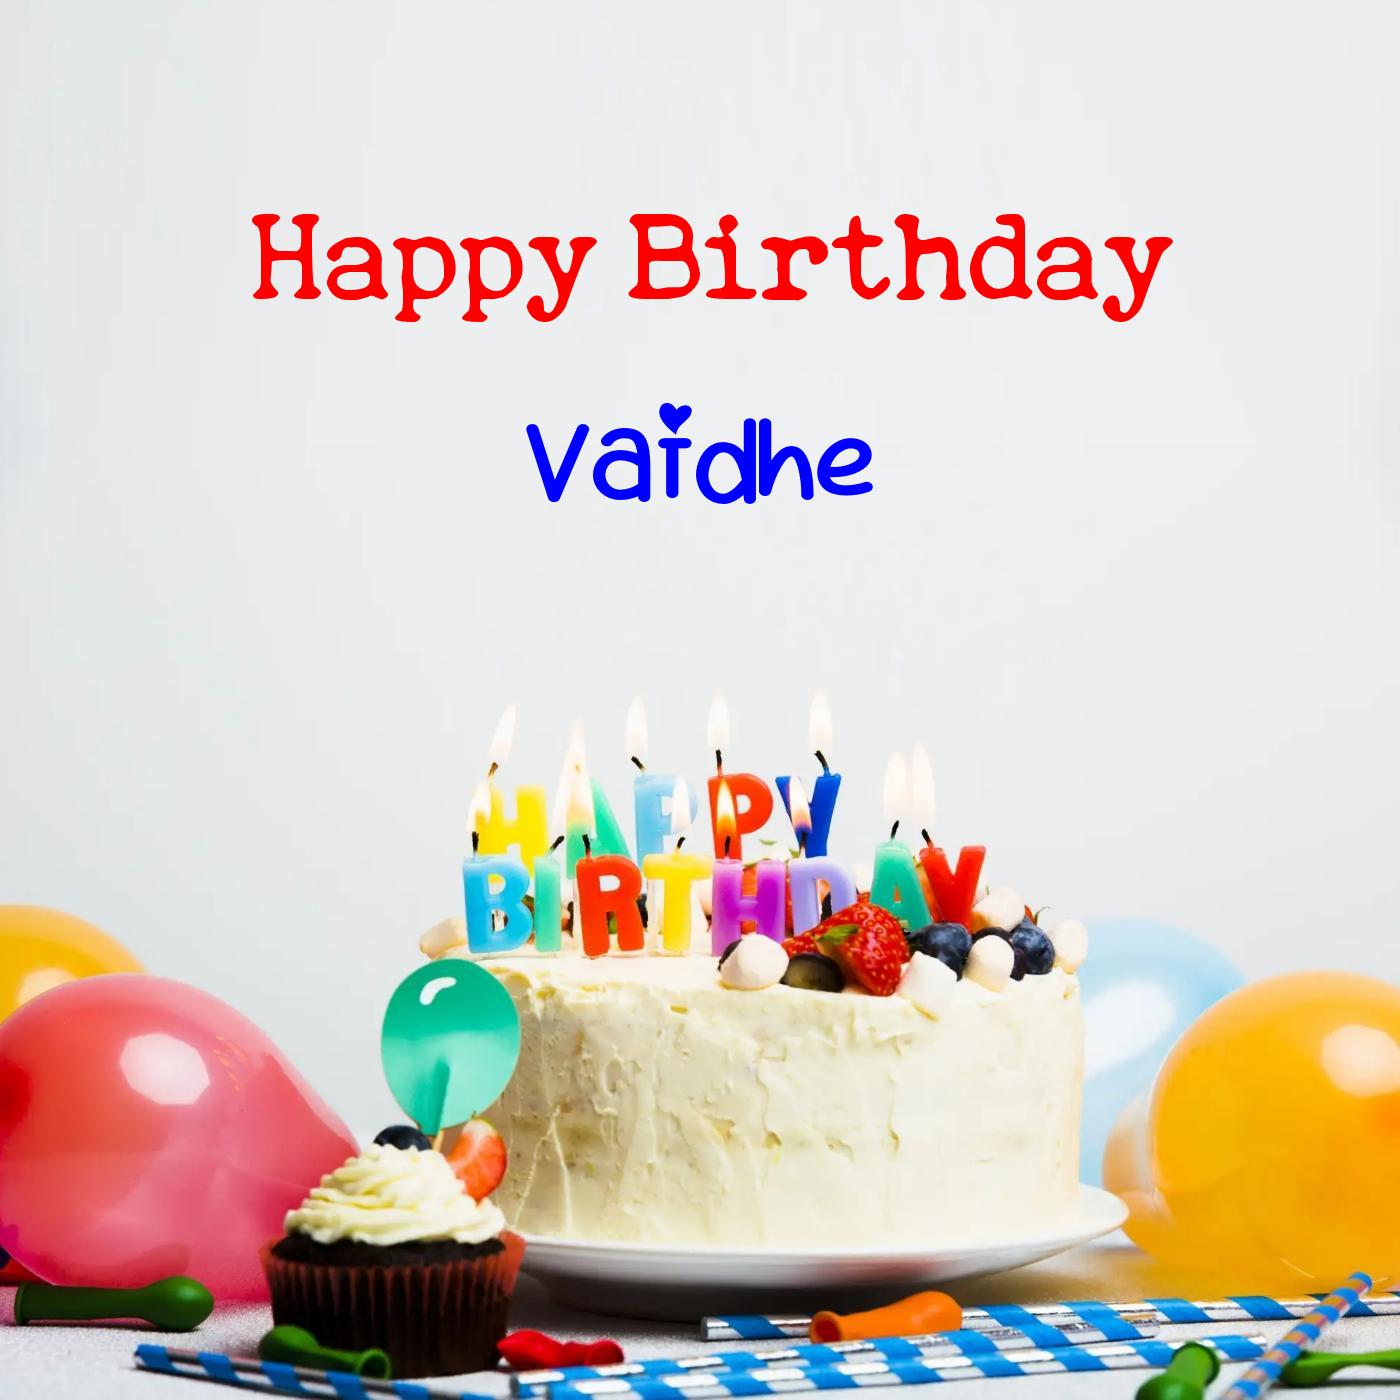 Happy Birthday Vaidhe Cake Balloons Card